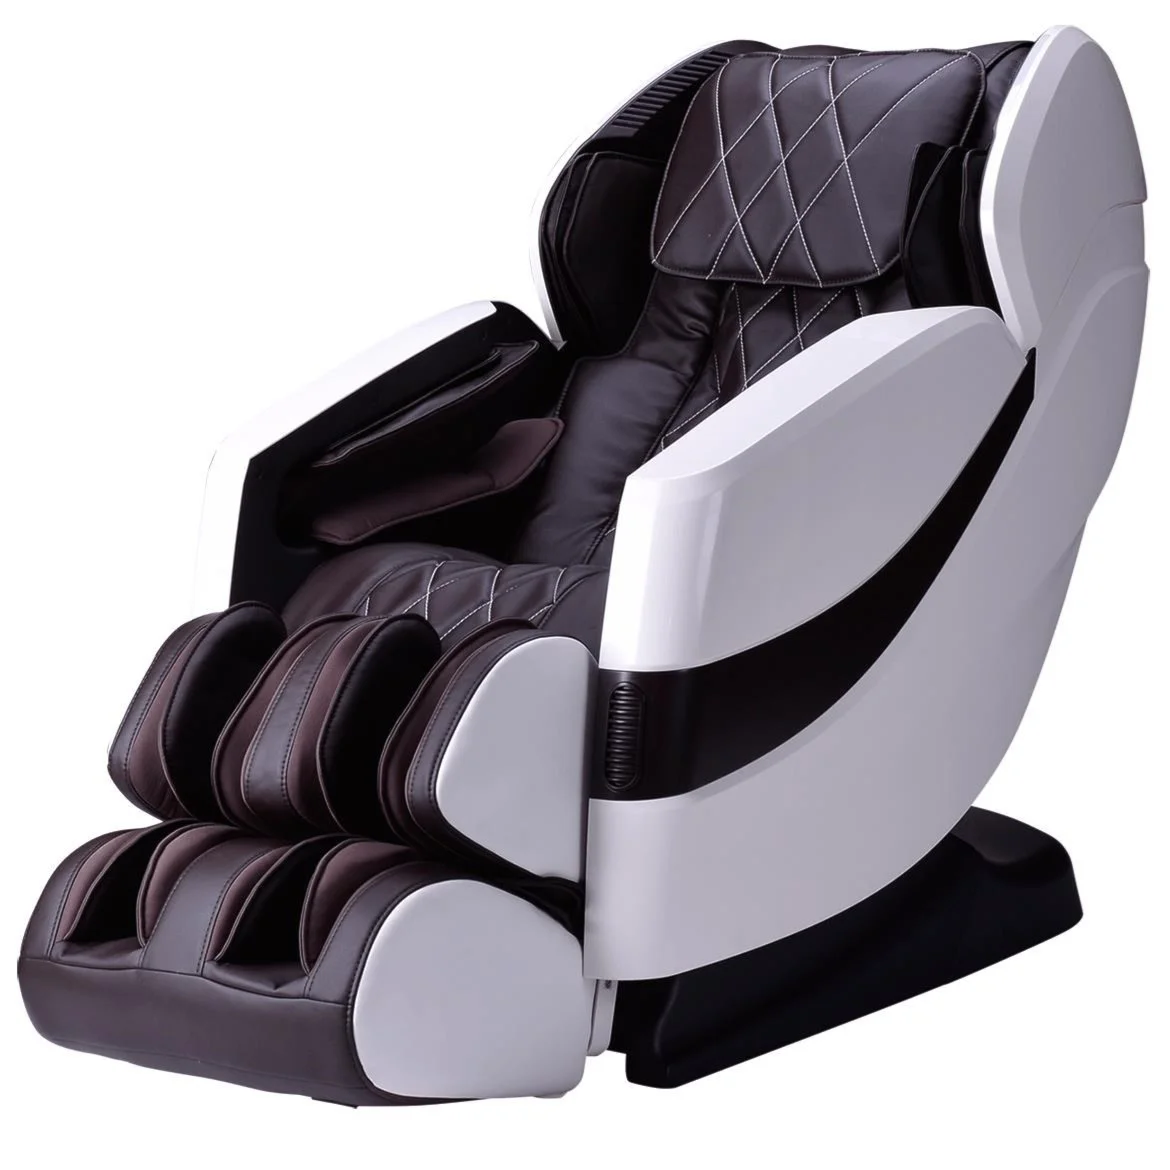 Cozzia Cz 357 Cz 357 Power Reclining 2d Massage Chair Belfort Furniture Recliner Massage Chair